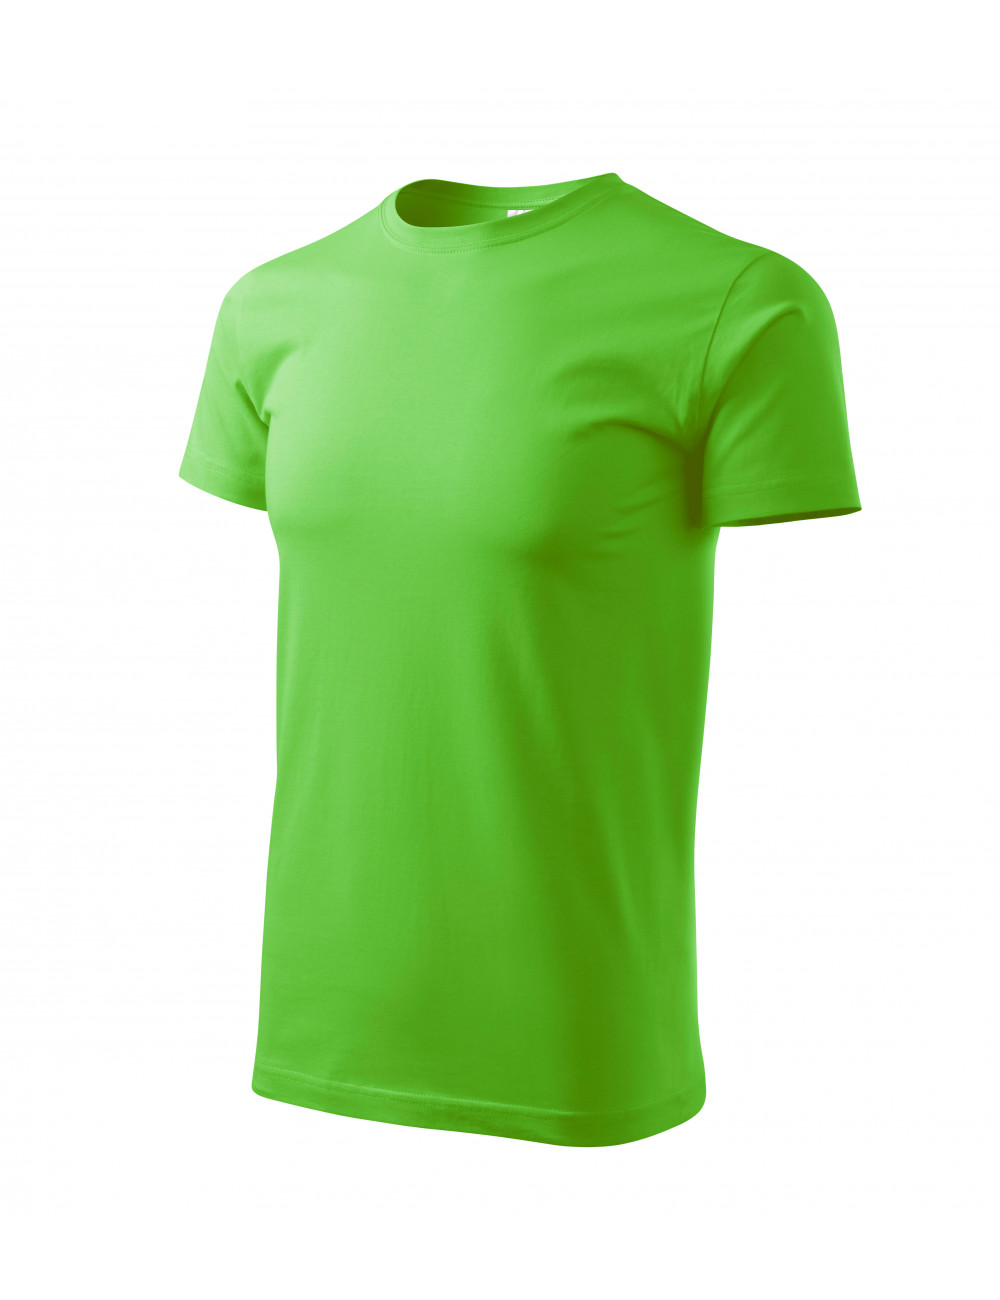 Herren Basic T-Shirt 129 grüner Apfel Adler Malfini